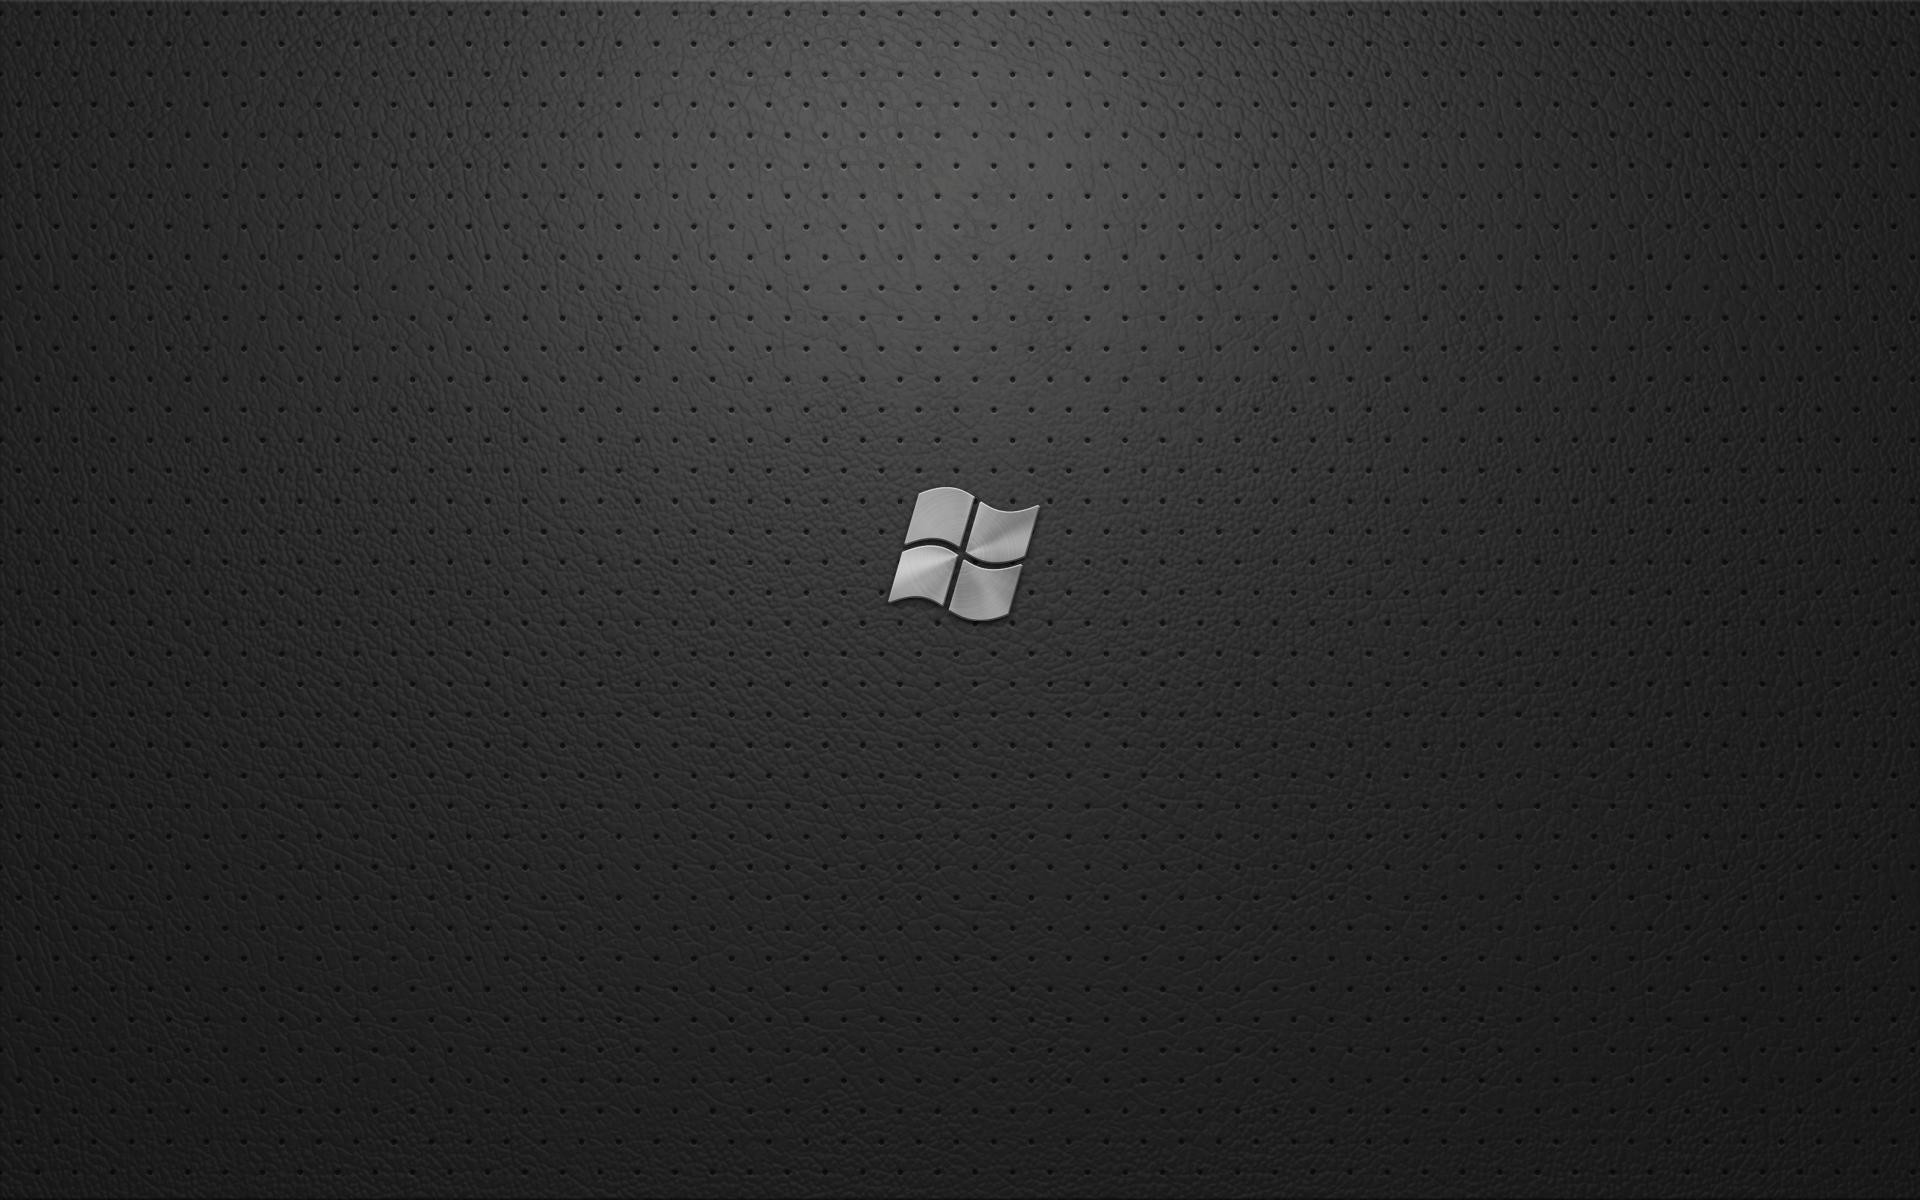 Tìm kiếm những bức ảnh nền đen trên Windows 7? Hãy không ngần ngại ghé thăm trang web của chúng tôi để khám phá bộ sưu tập ảnh đen độc đáo và đẹp mắt.